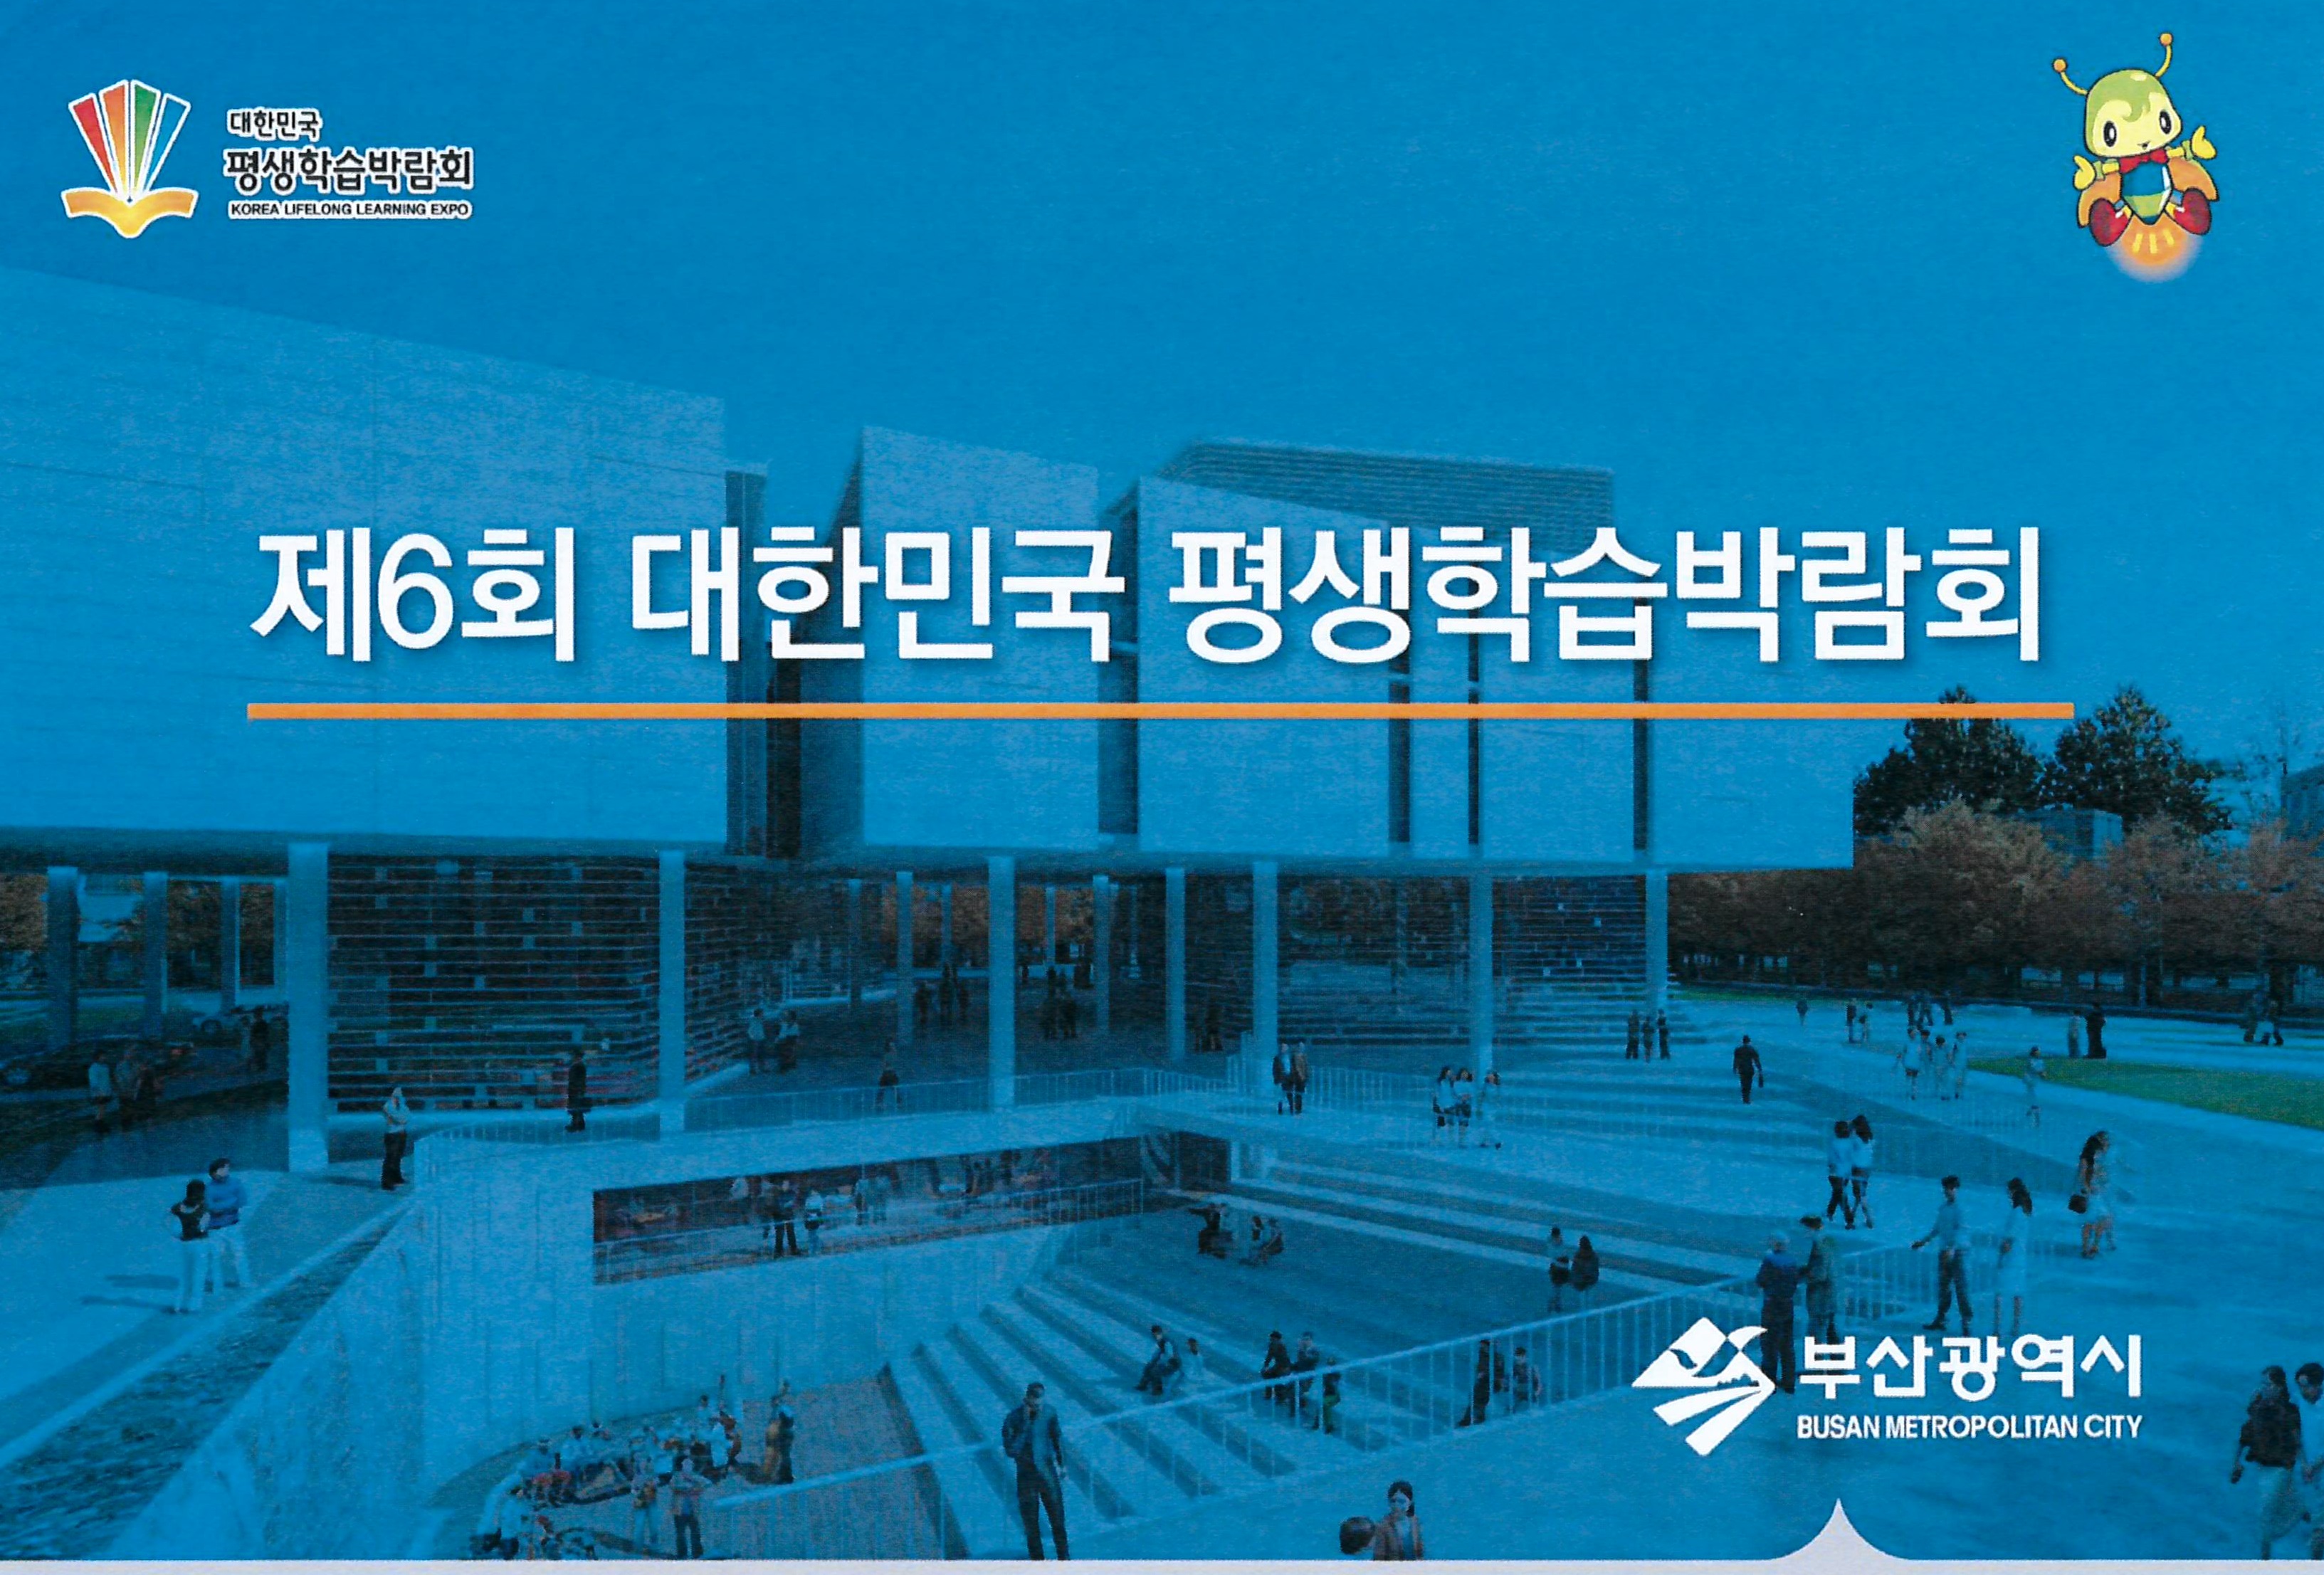 2018년 제6회 대한민국 평생학습박람회 개최  알림